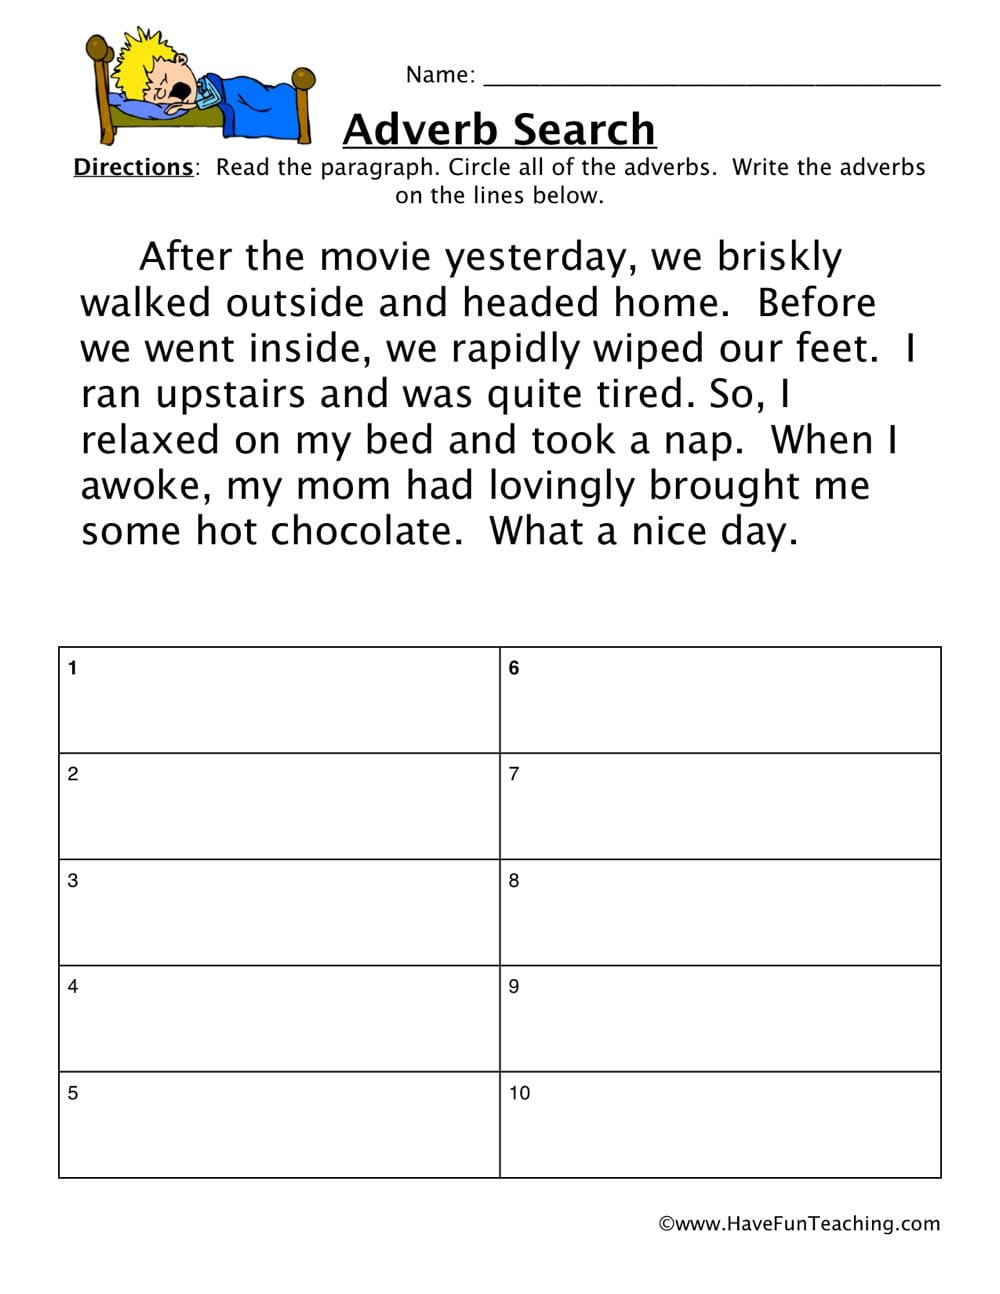 Adverb Movie Worksheet  Have Fun Teaching